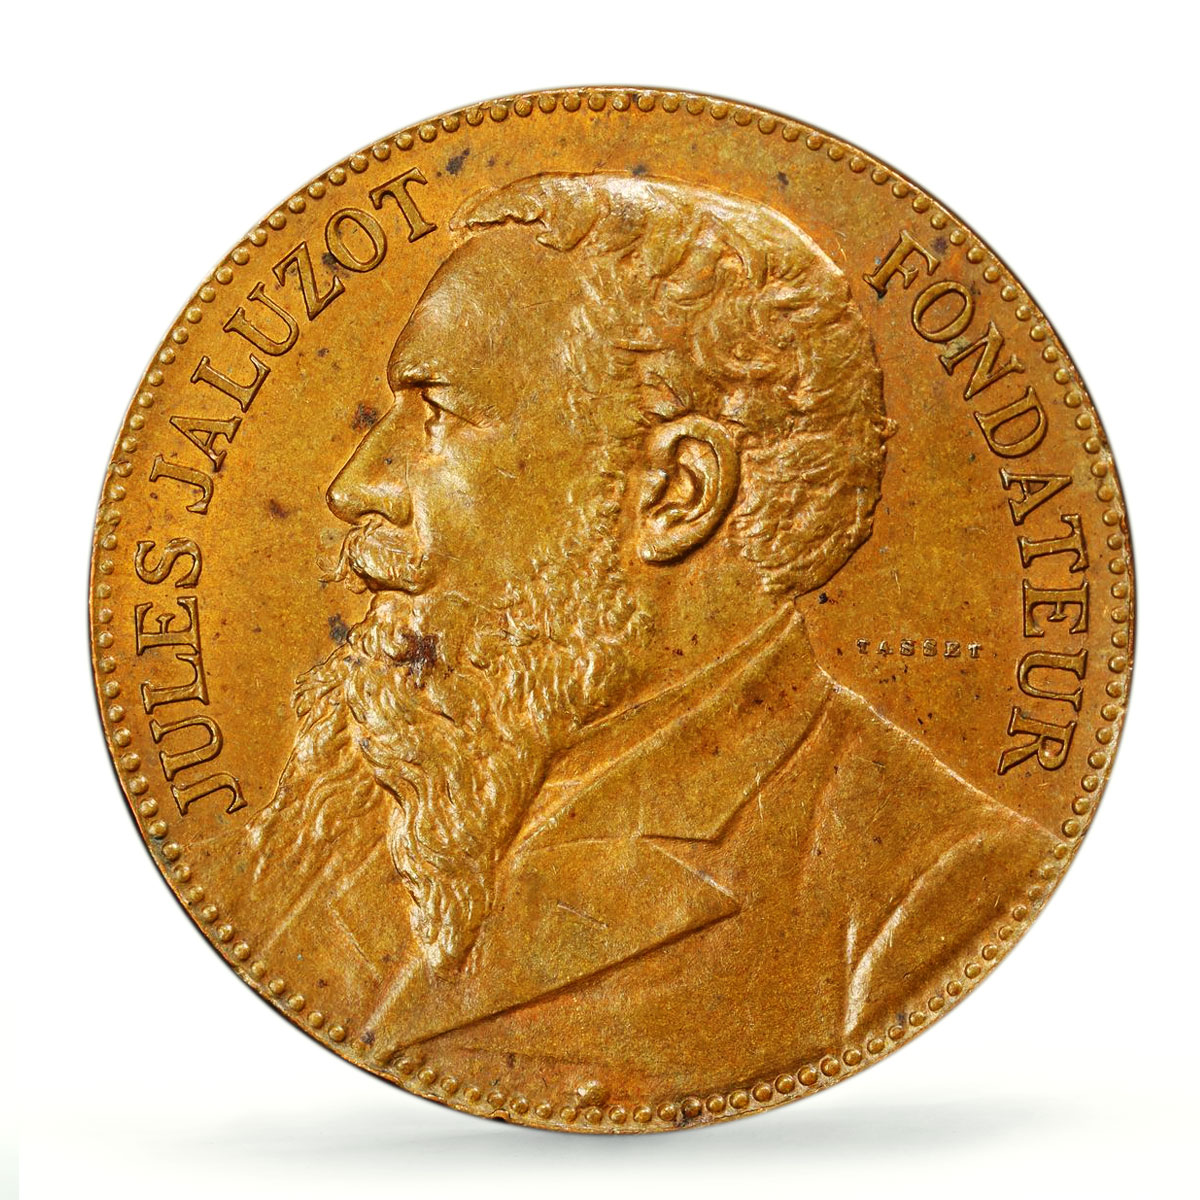 France Jules Jaluzot Printemps AU AE MS64 PCGS bronze token medal coin 1884